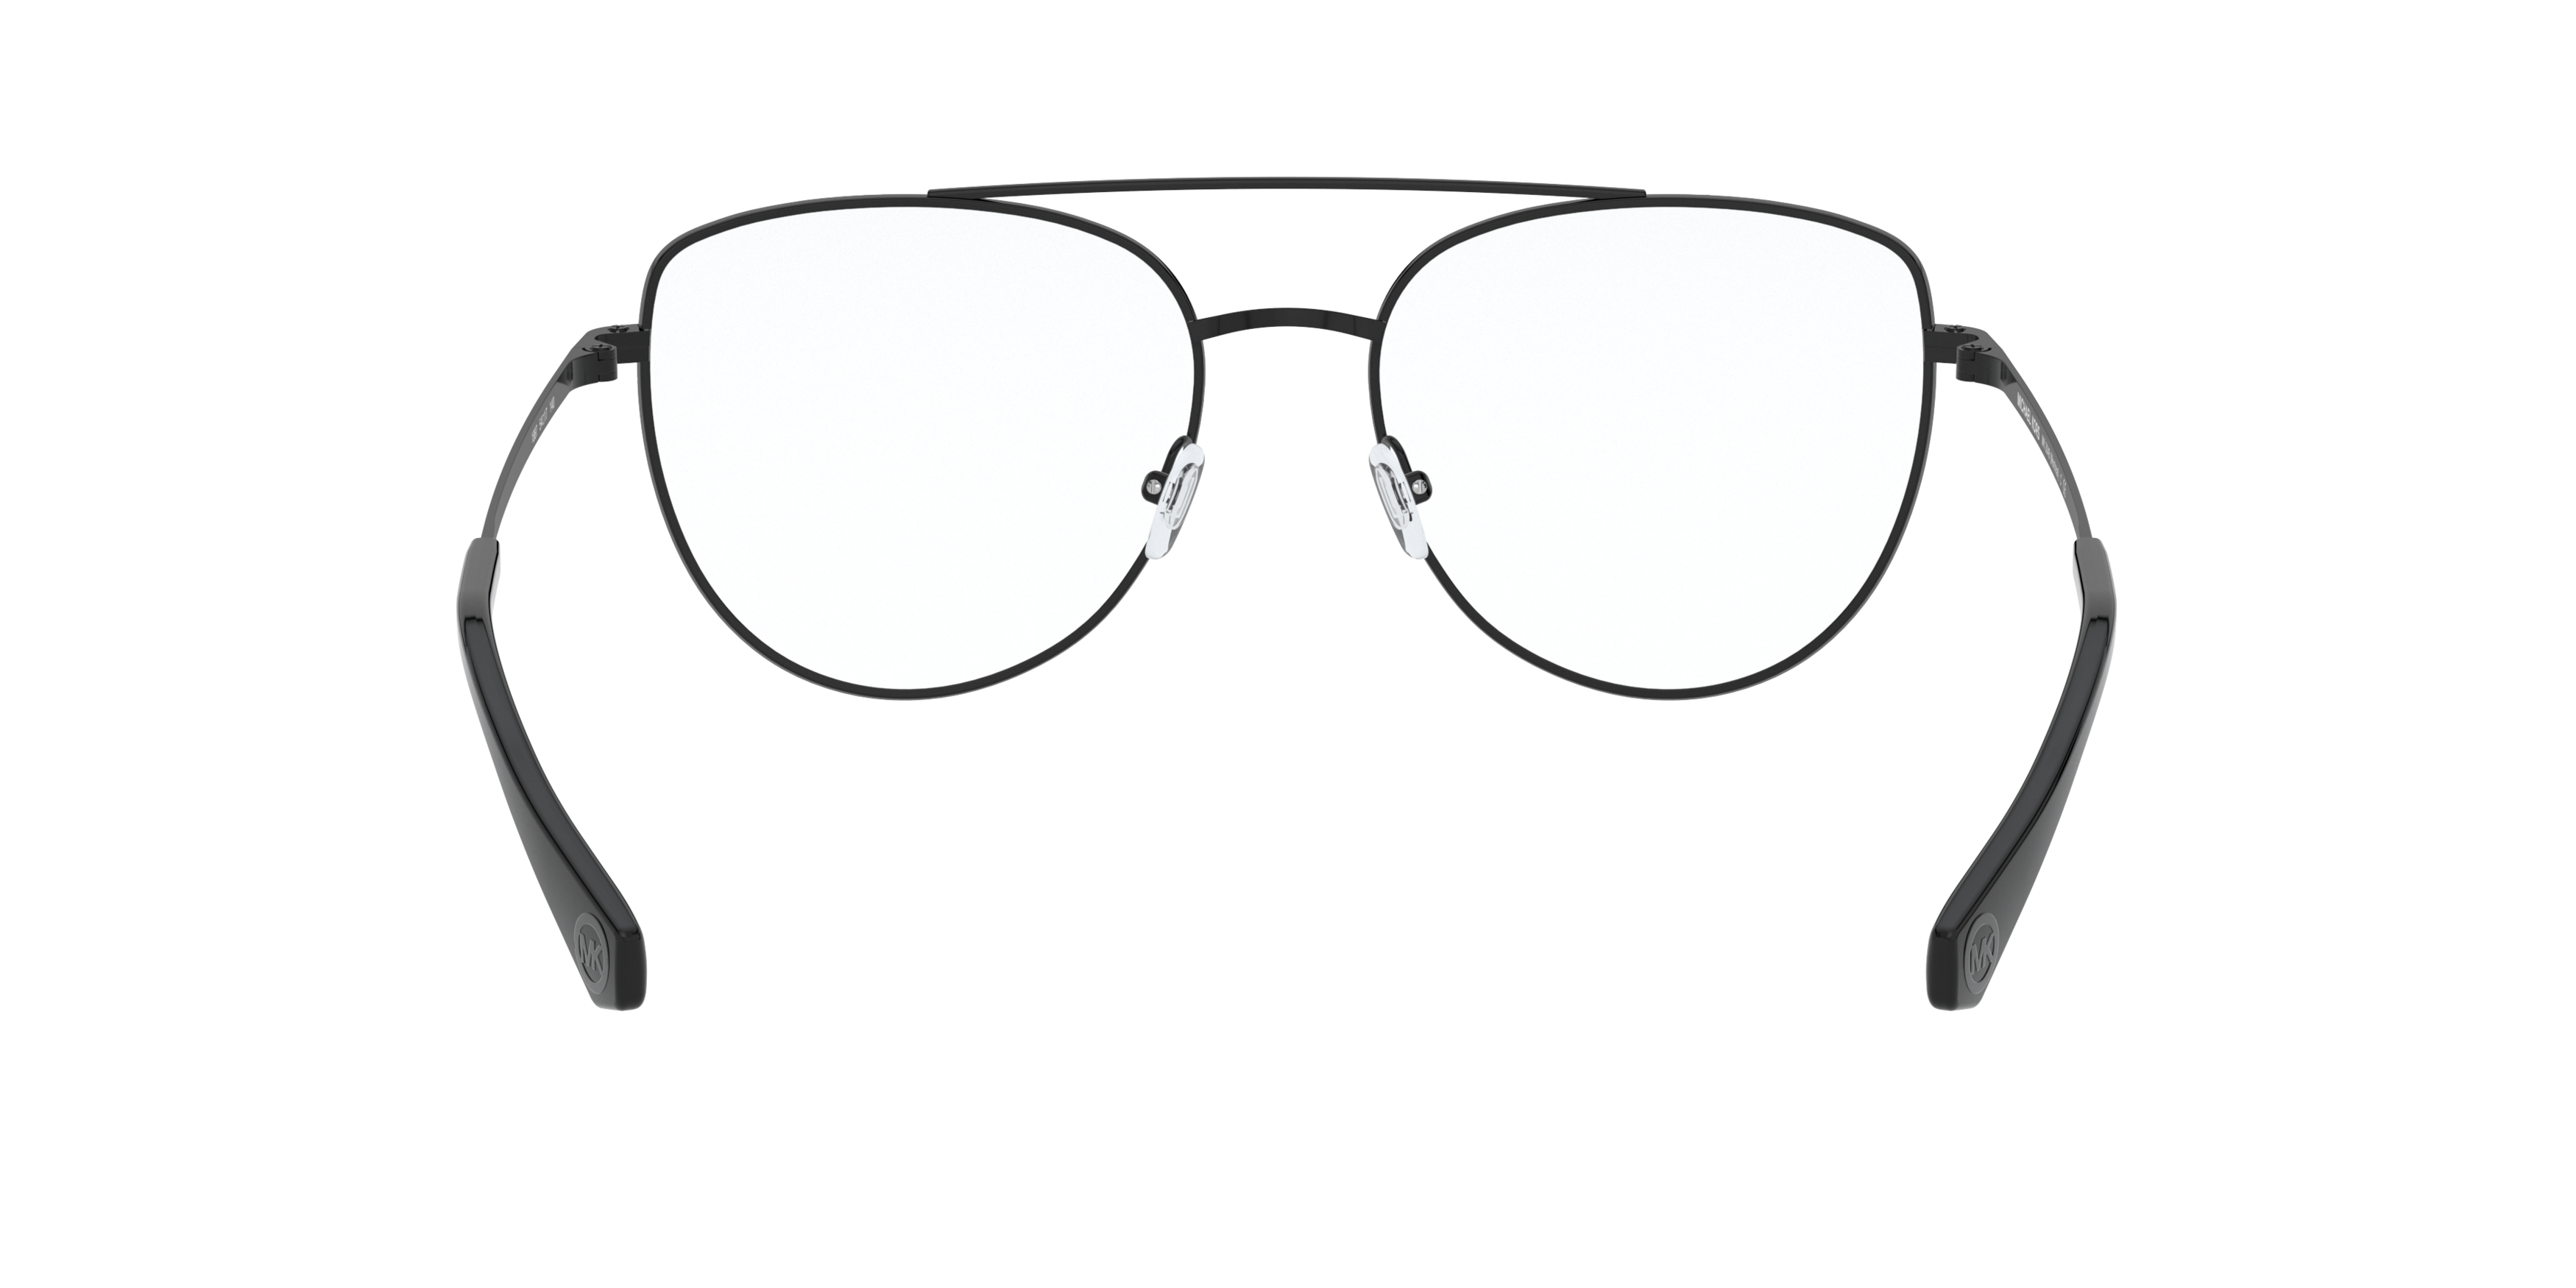 Detail02 Michael Kors MK 3048 Glasses Transparent / Brown